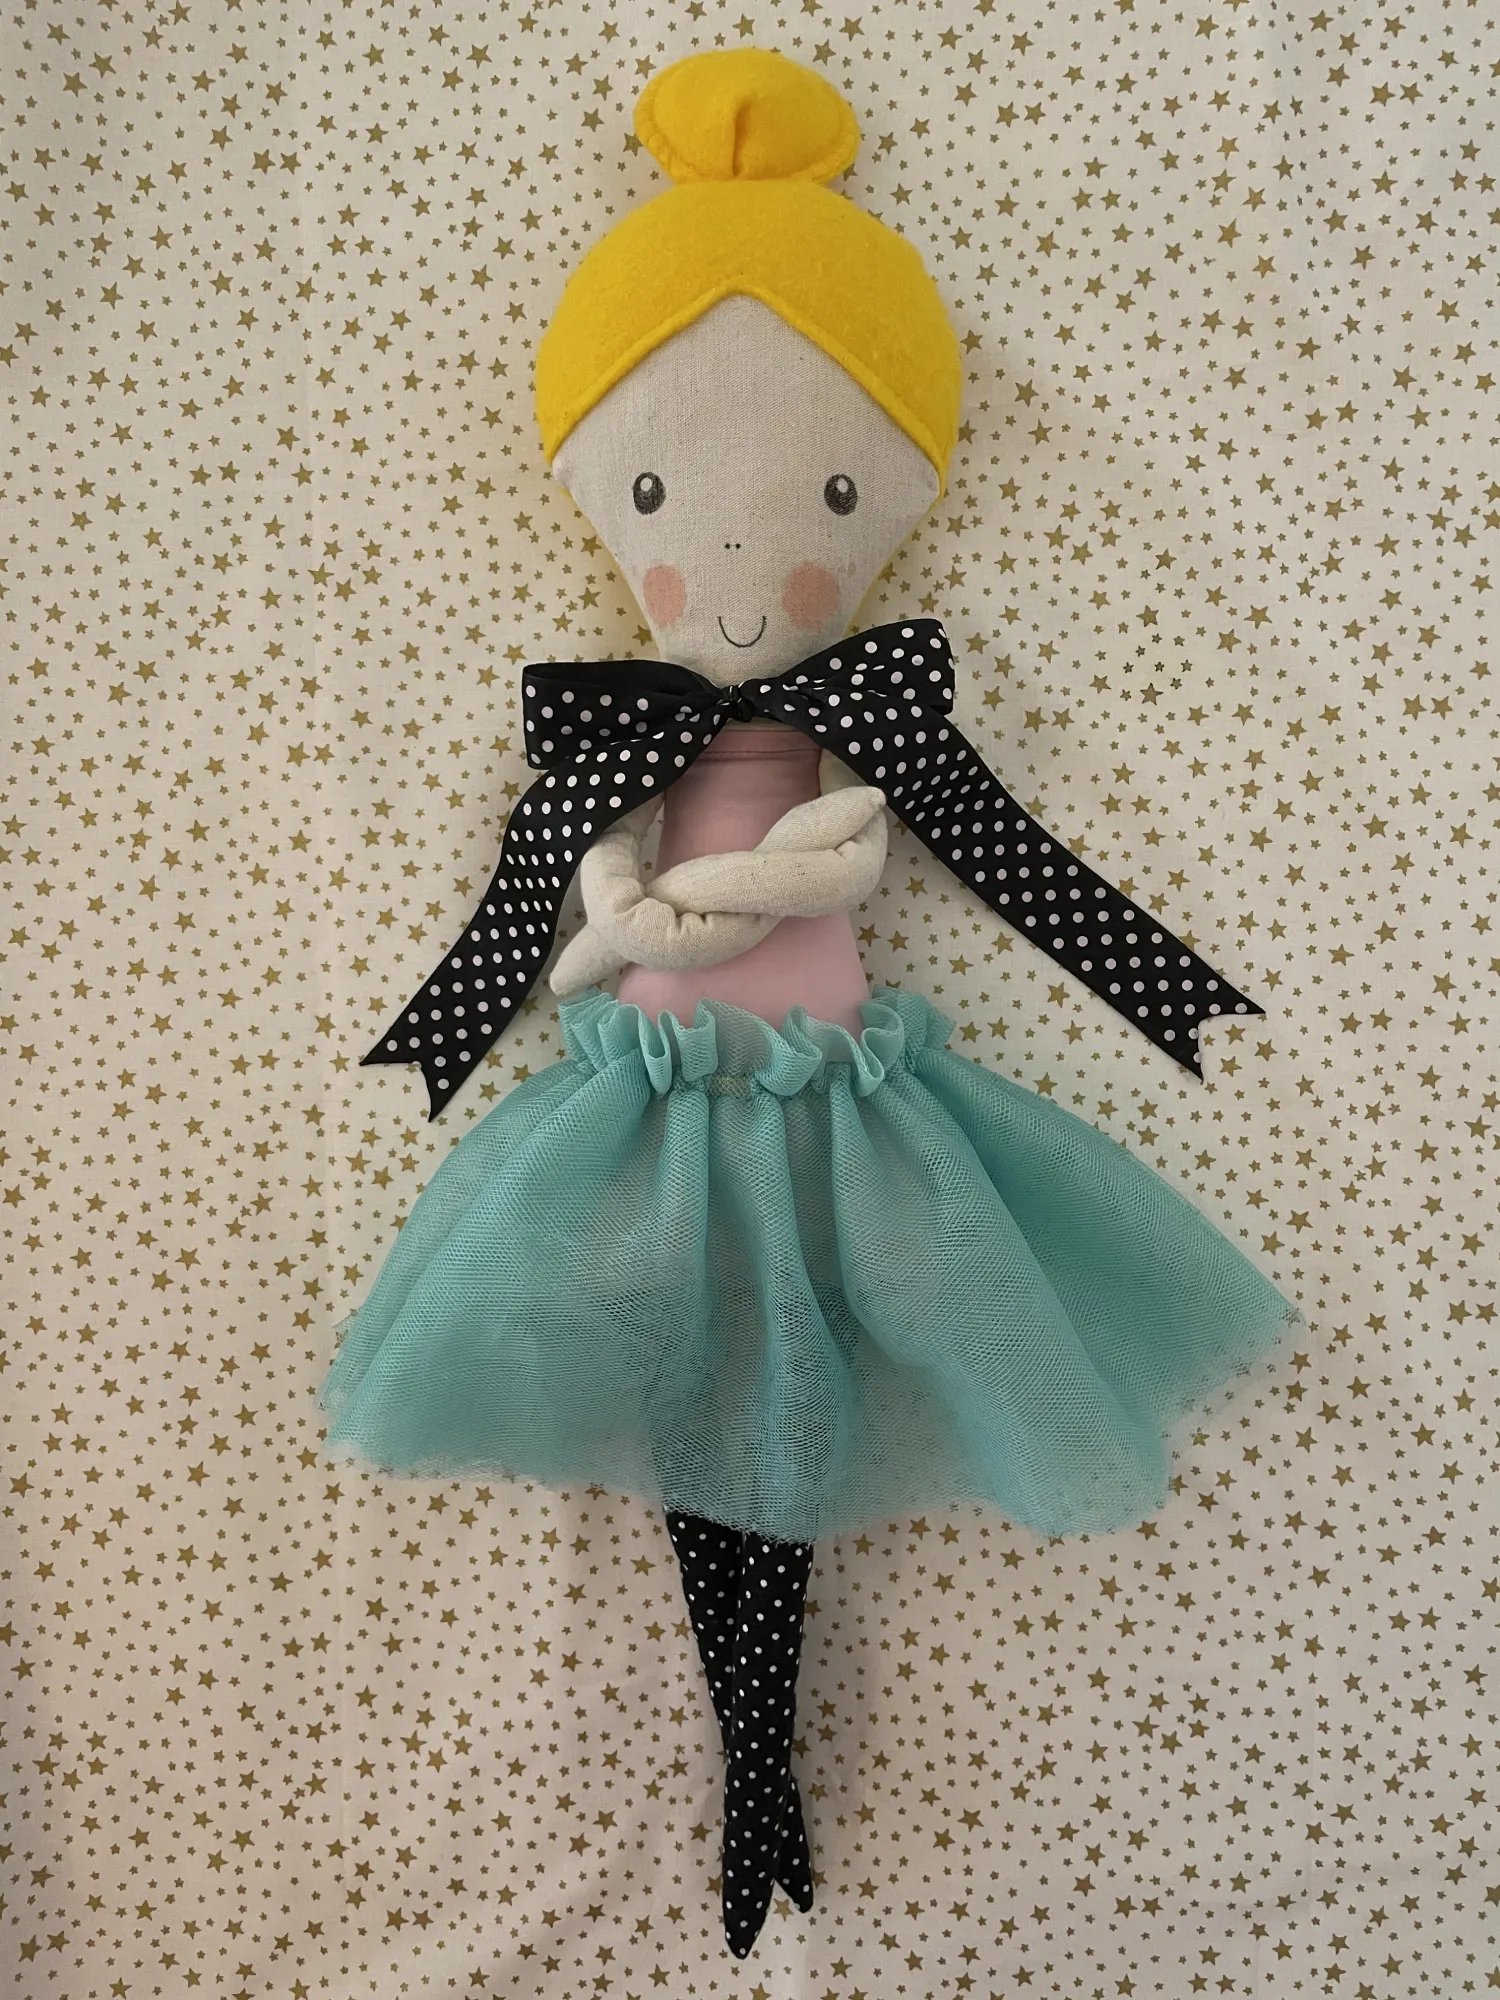 Eine fertige Puppe für Kinder – Erika